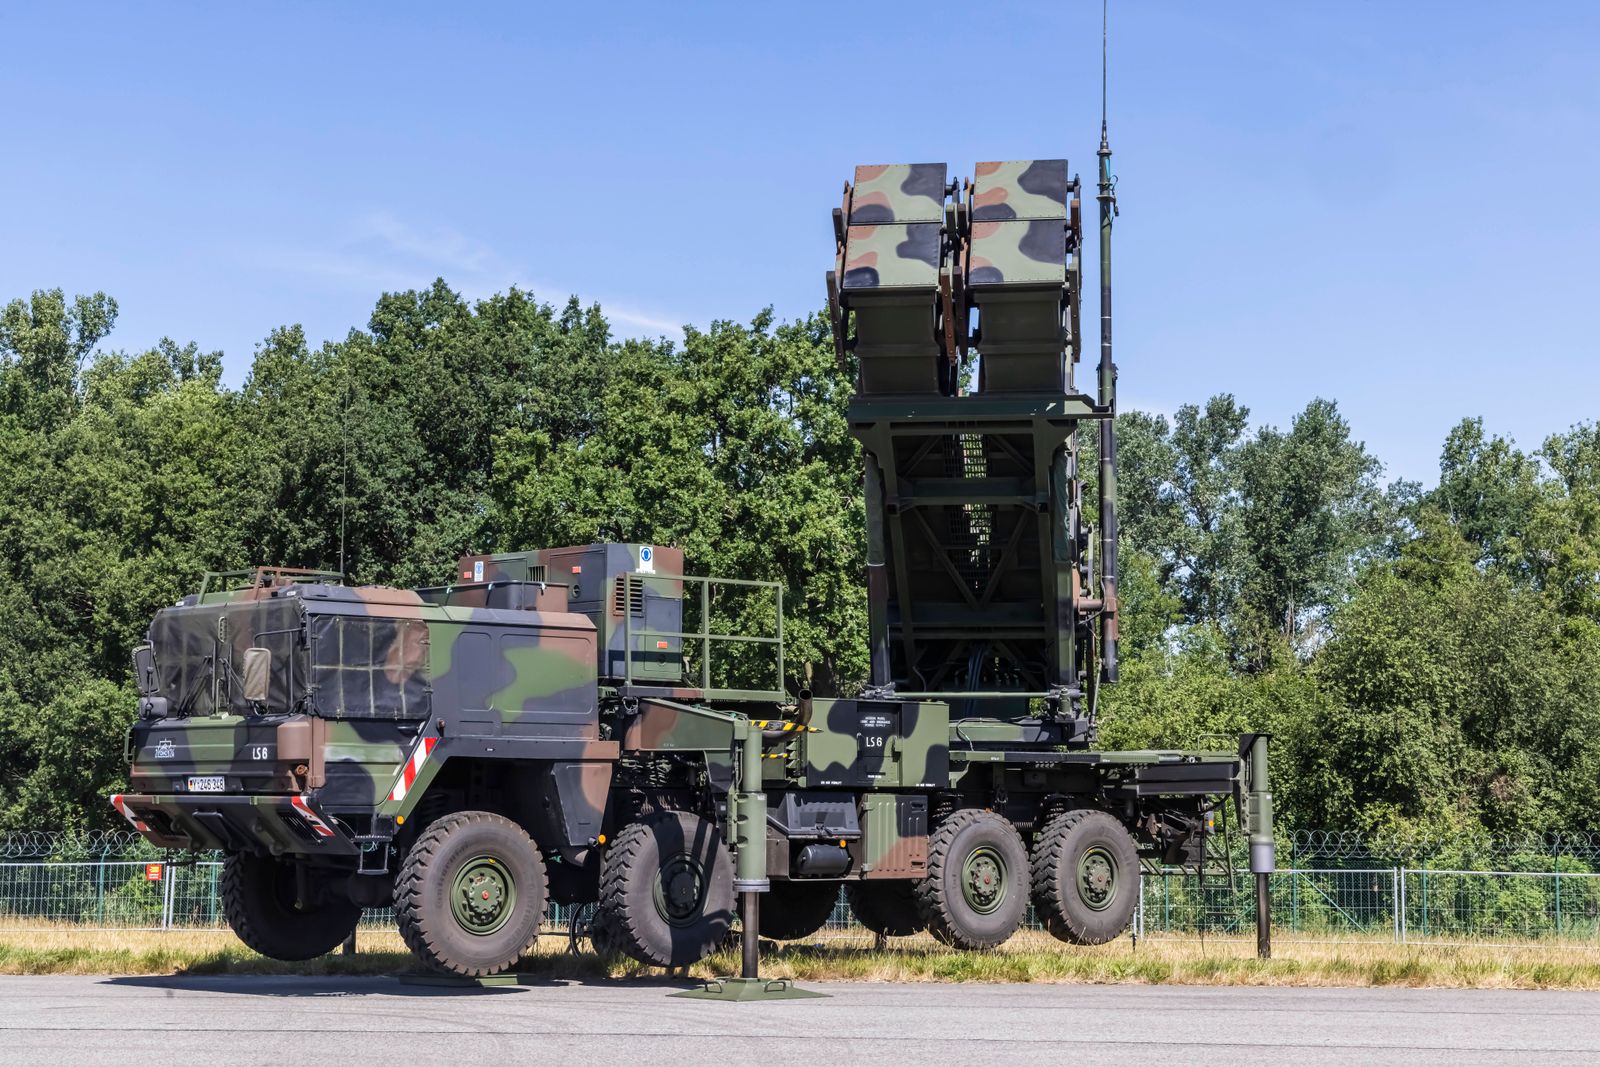 Німеччина відмовилася відправляти в Україну системи протиповітряної оборони Patriot - їх буде розміщено в Польщі